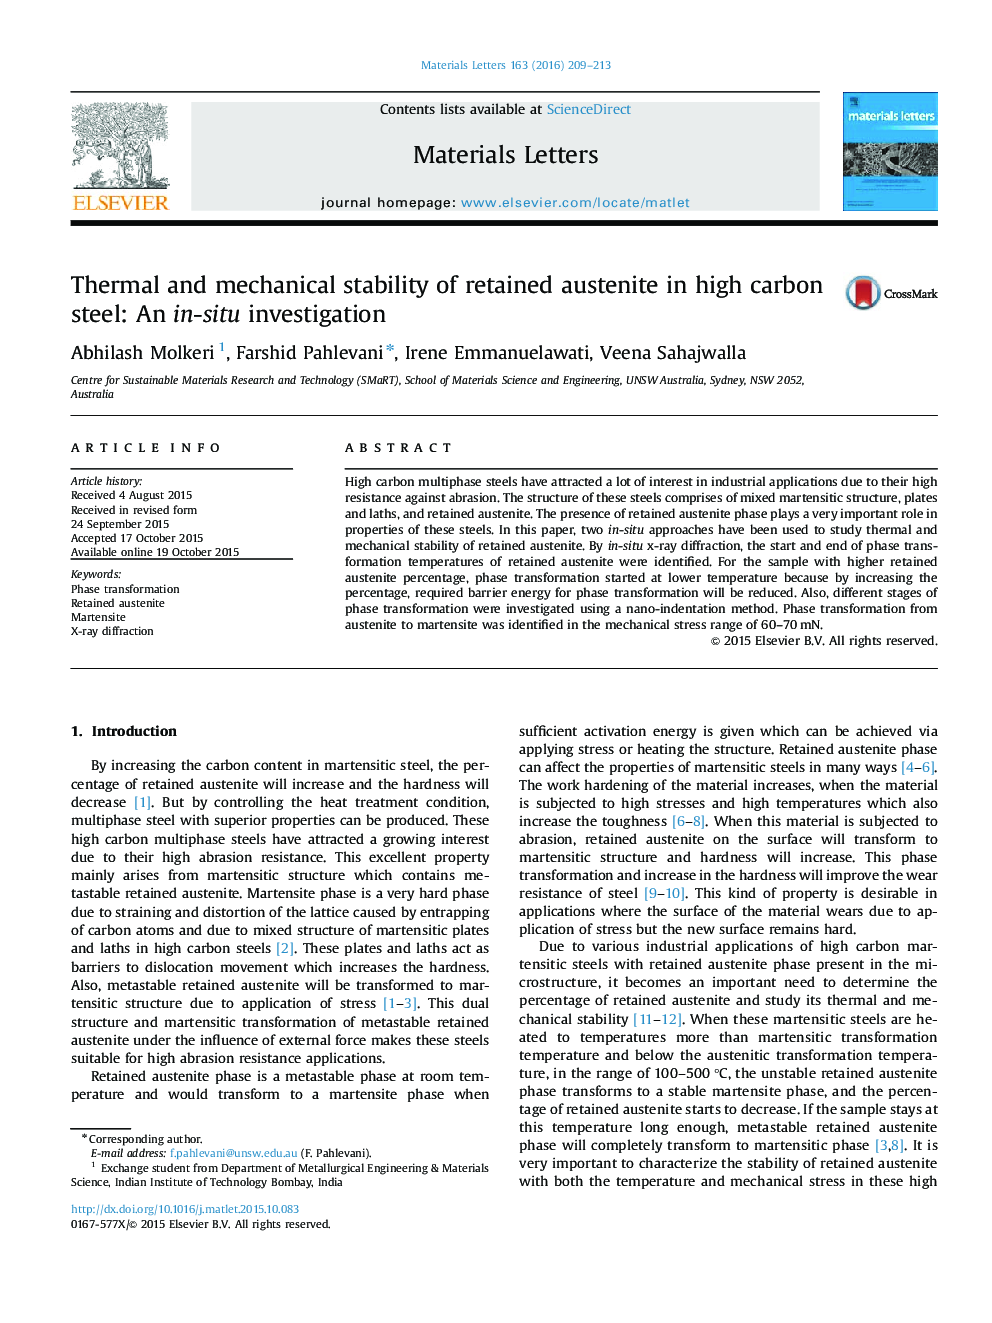 پایداری حرارتی و مکانیکی آستنیت حفظ شده در فولاد کربن بالا: یک مطالعه در محل 